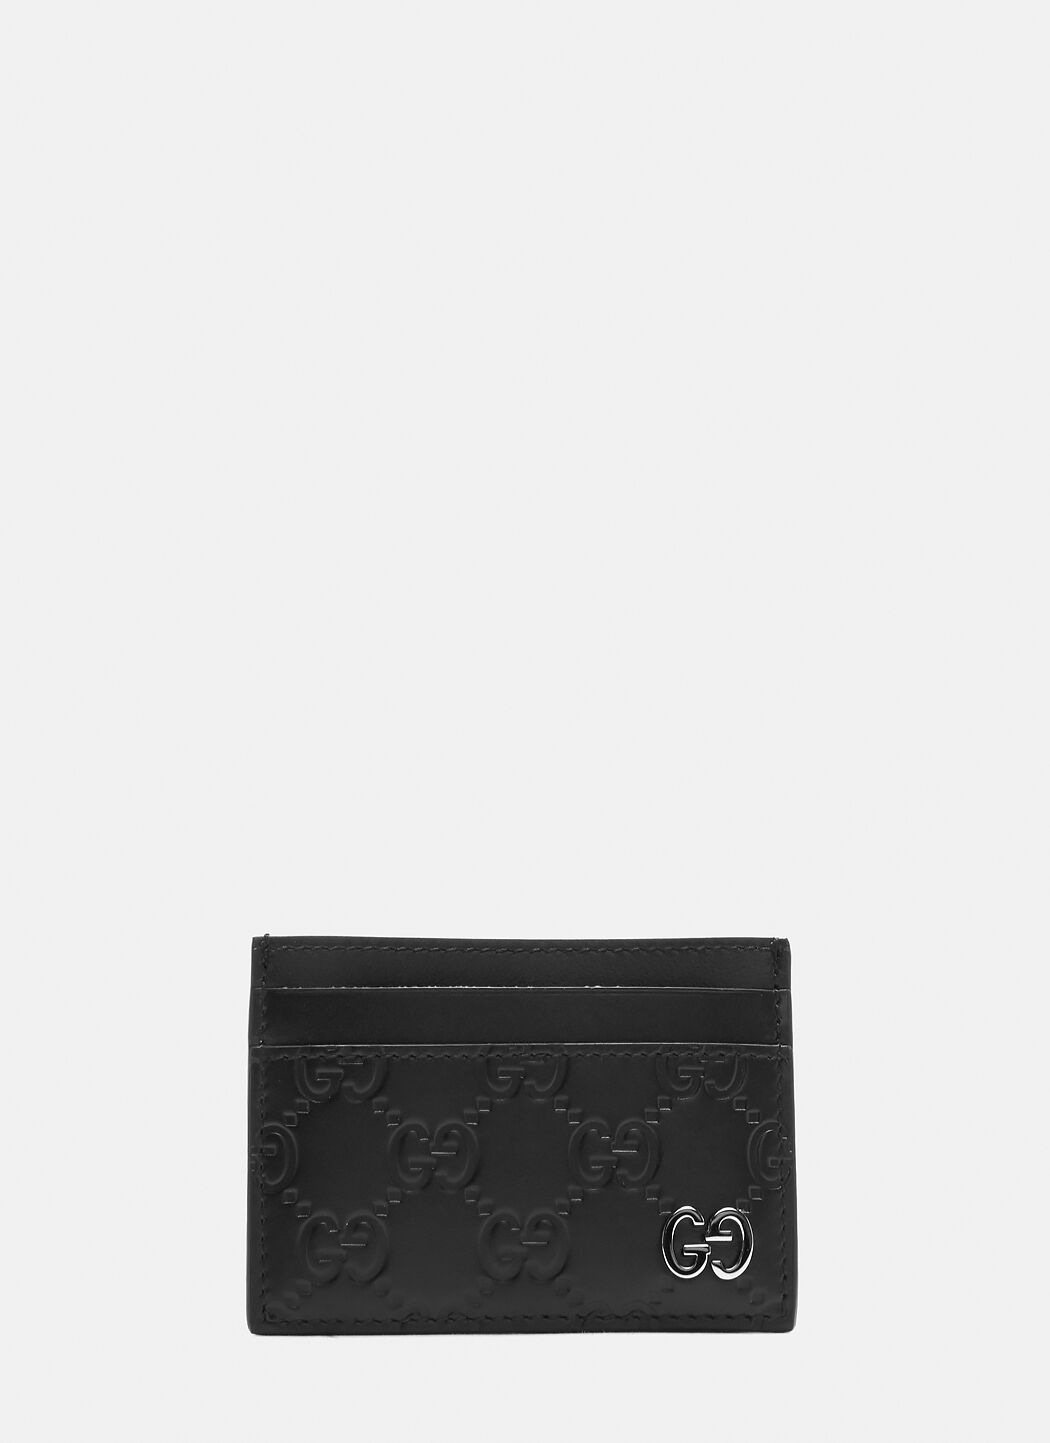 Saint Laurent Gucci 经典卡包 黑色 sla0238013